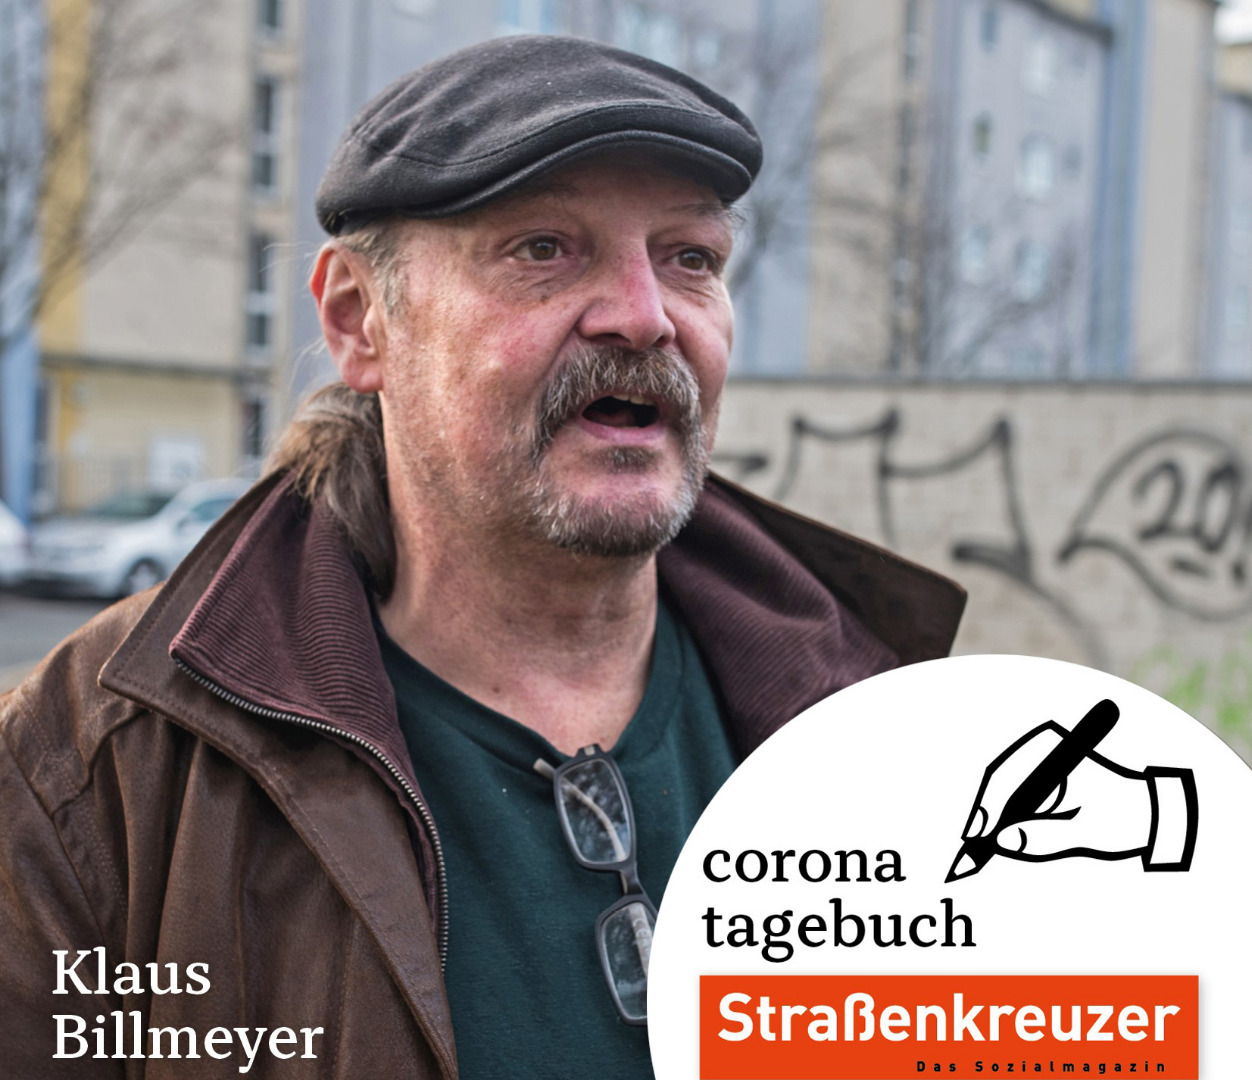 Klaus Billmeyer ist Stadtführer, Verkäufer und Mitarbeiter beim Pfandprojekt des Straßenkreuzers. / www.strassenkreuzer.info